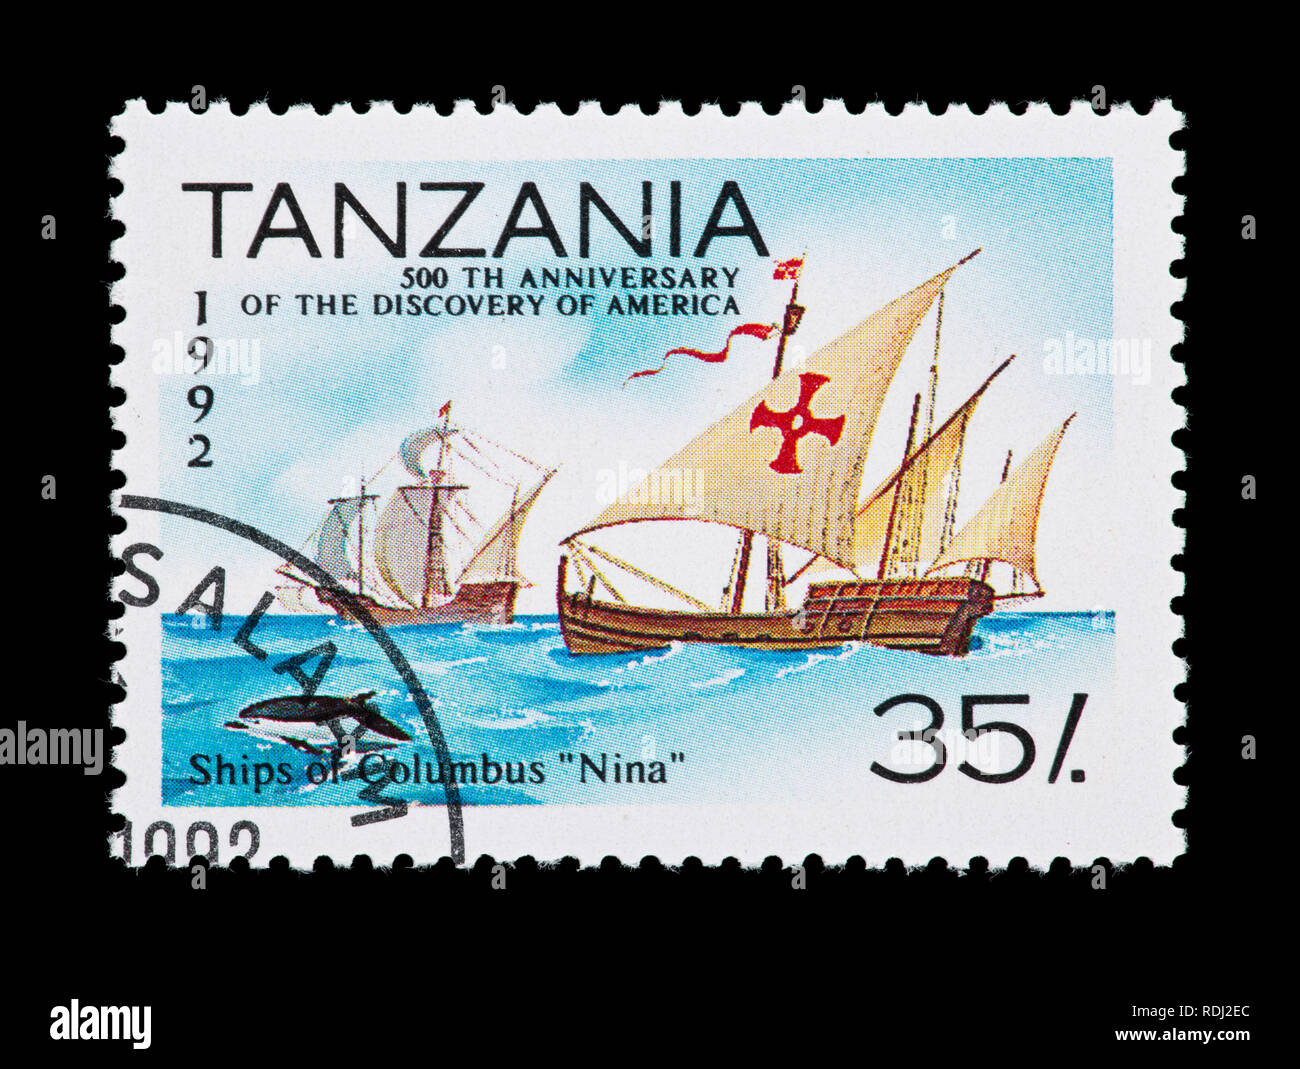 Francobollo dalla Tanzania raffigurante la Nina, nave da Columbus; flotta, il cinquecentesimo anniversario della scoperta del nuovo mondo Foto Stock